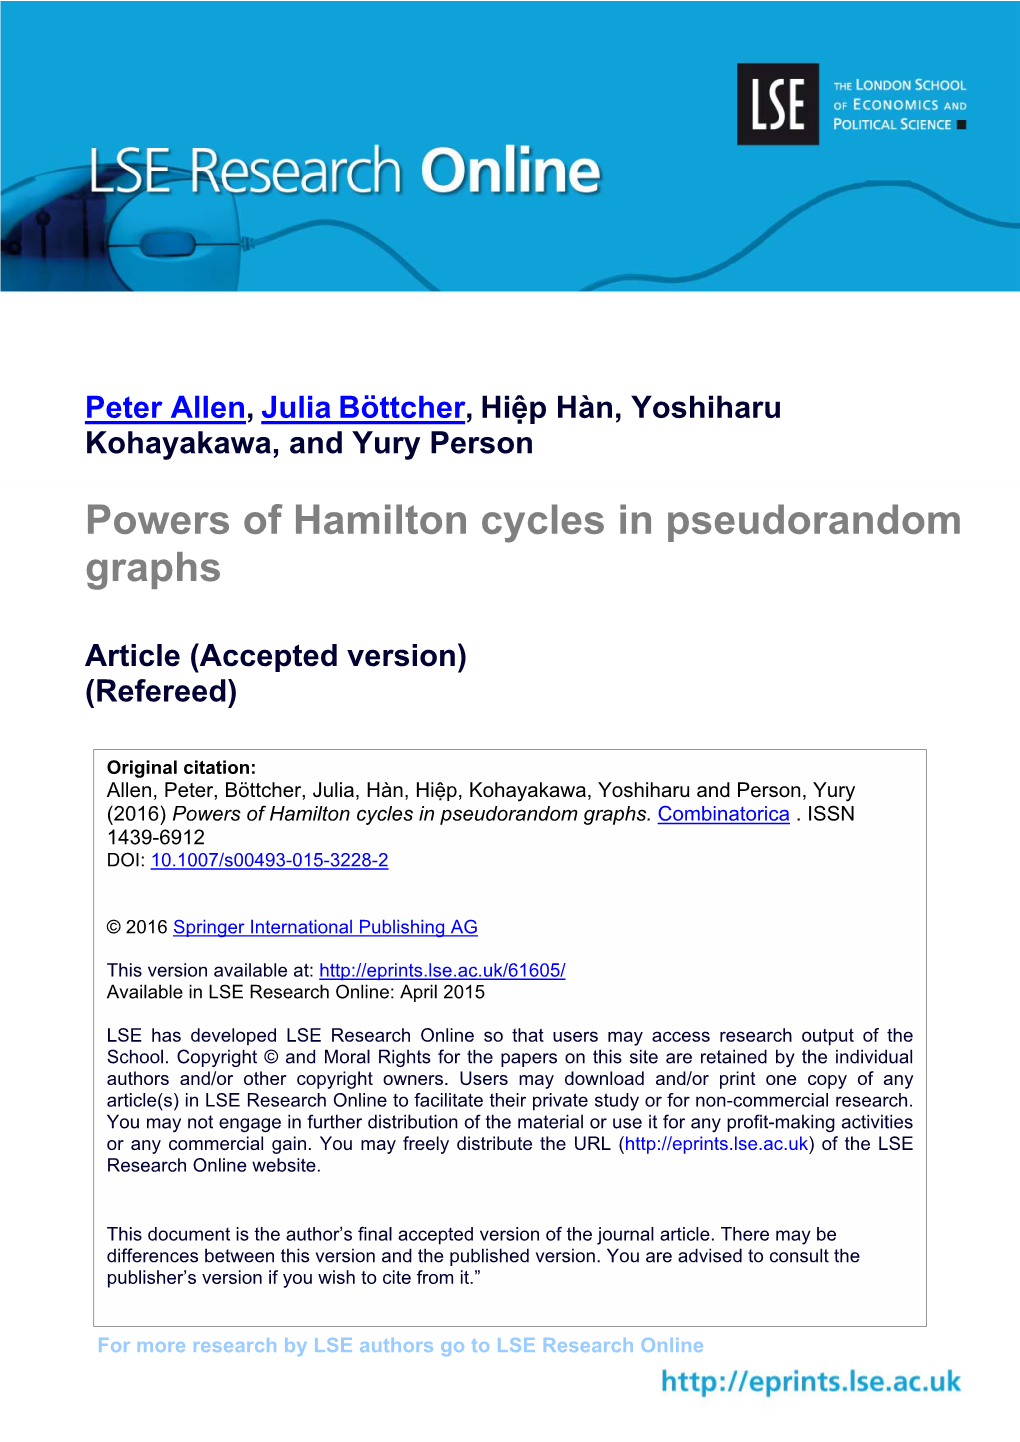 Powers of Hamilton Cycles in Pseudorandom Graphs